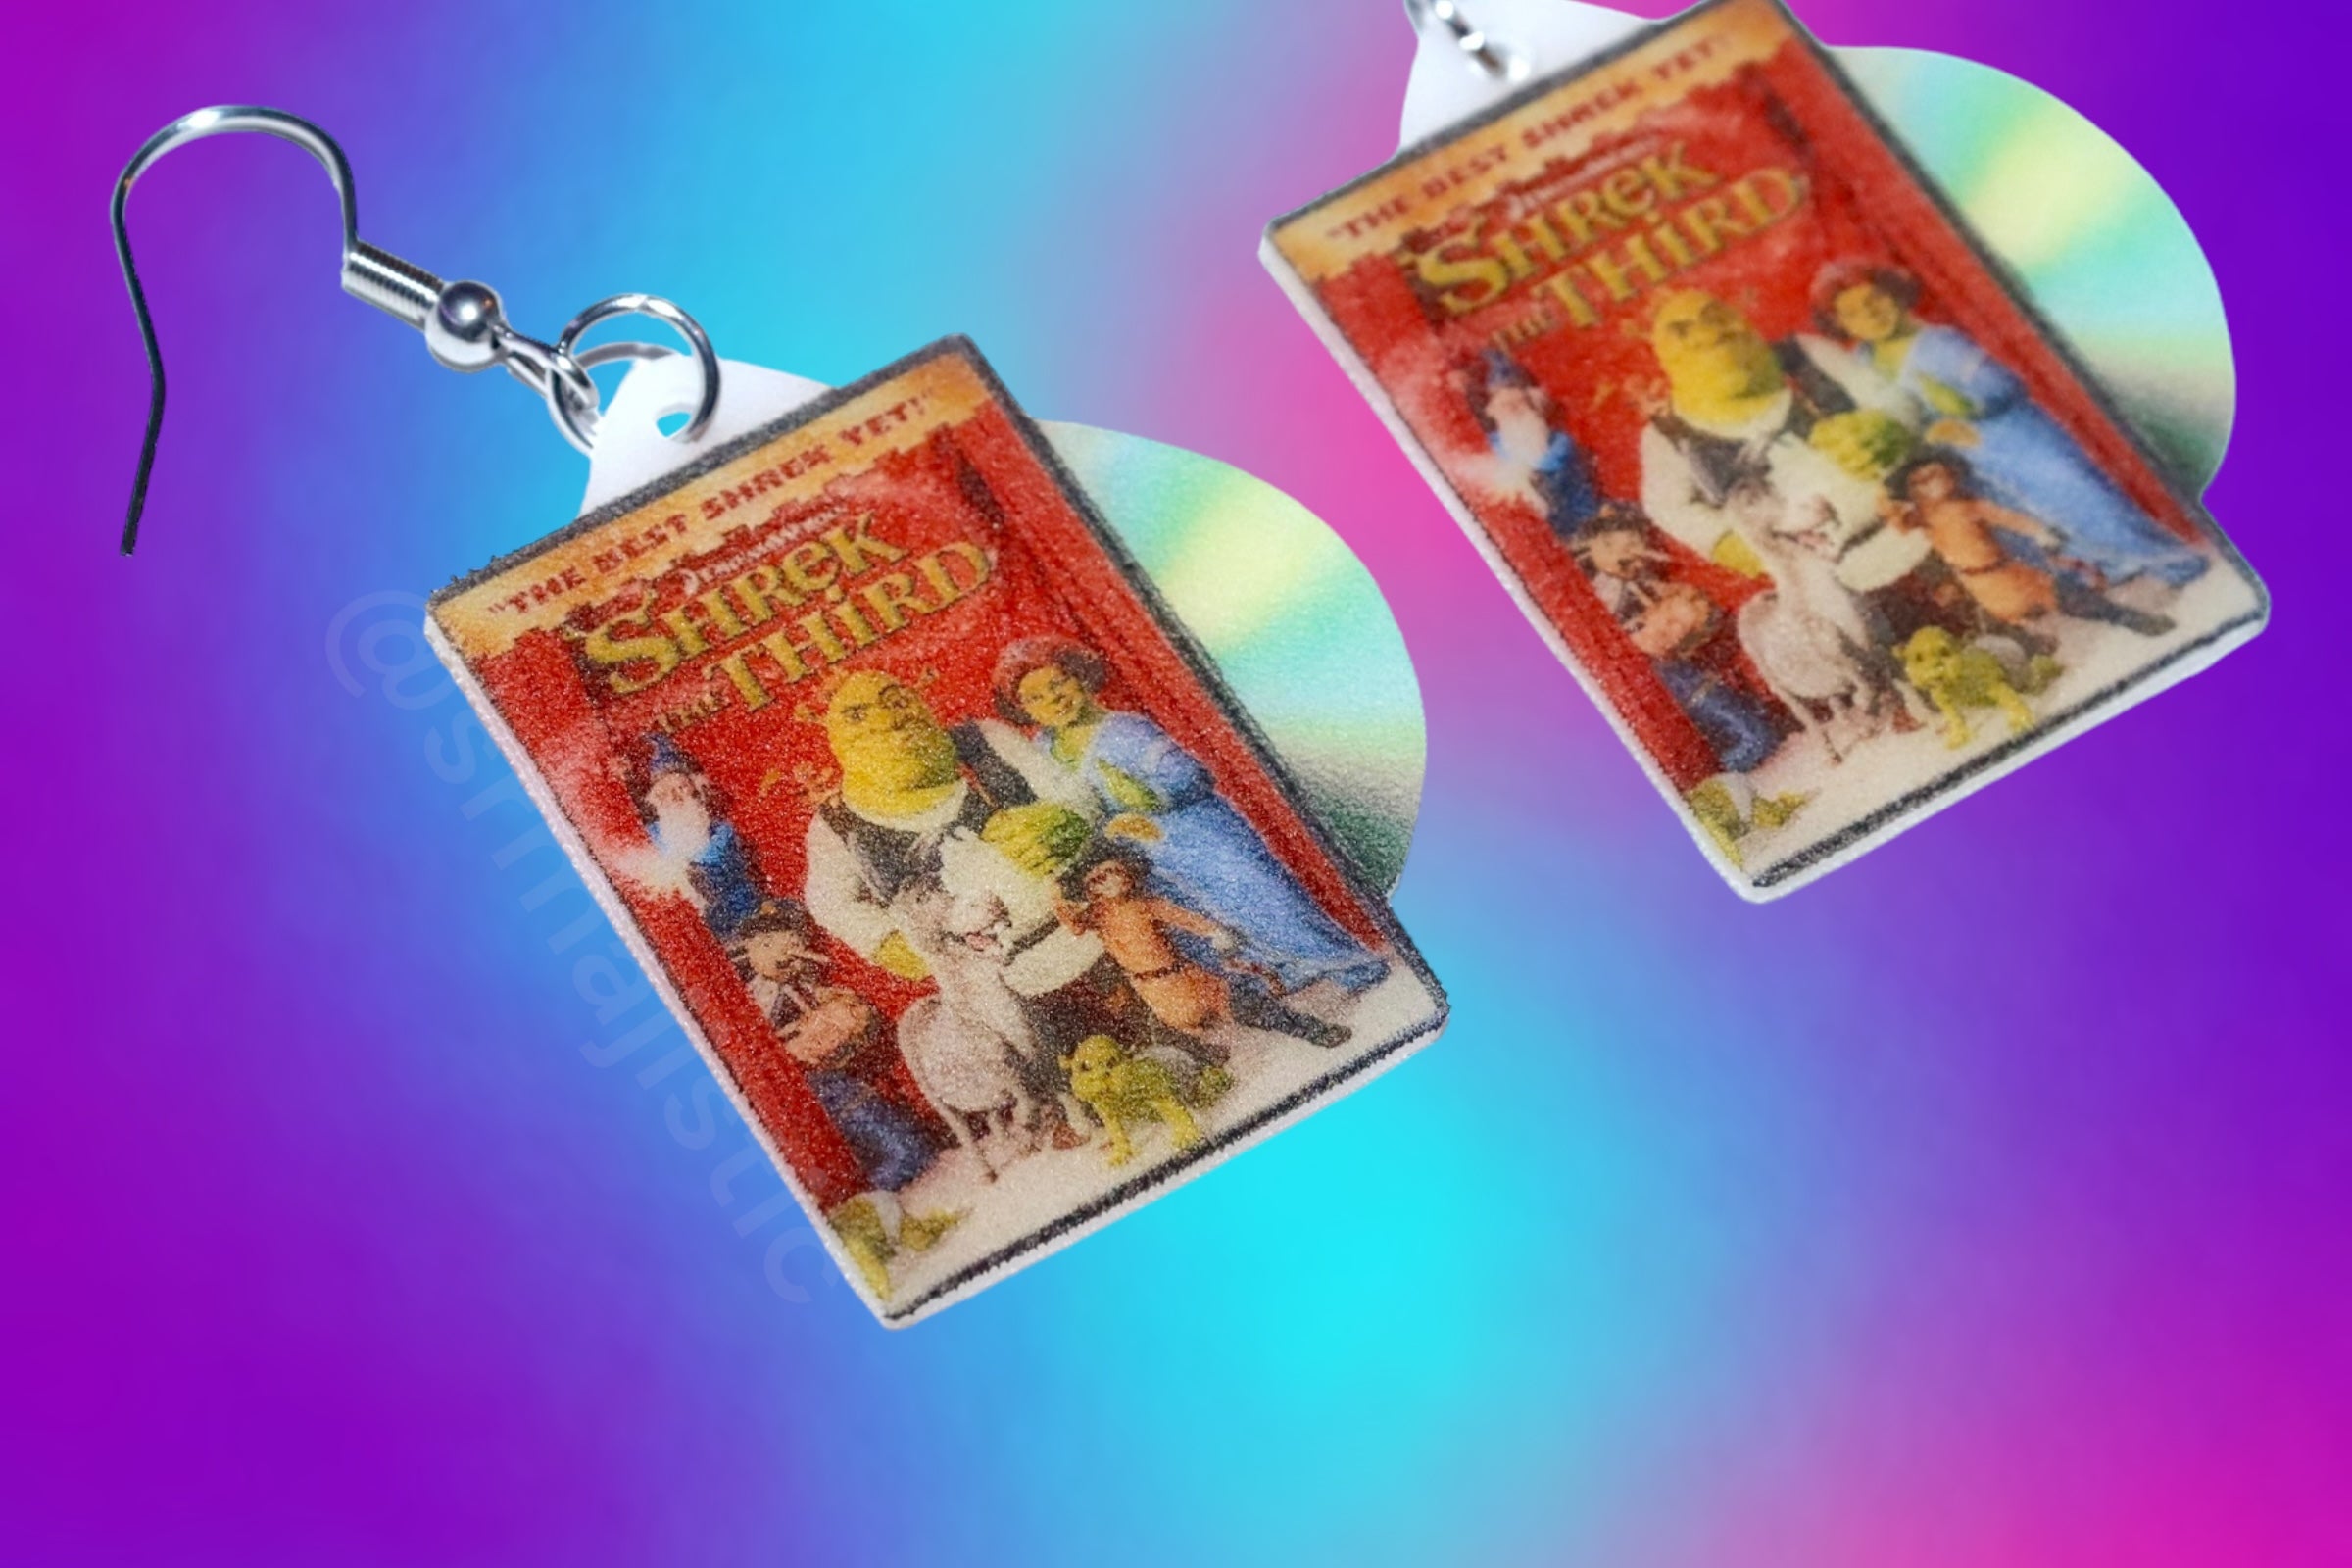 Shrek the Third (2007) DVD 2D detailed Handmade Earrings!